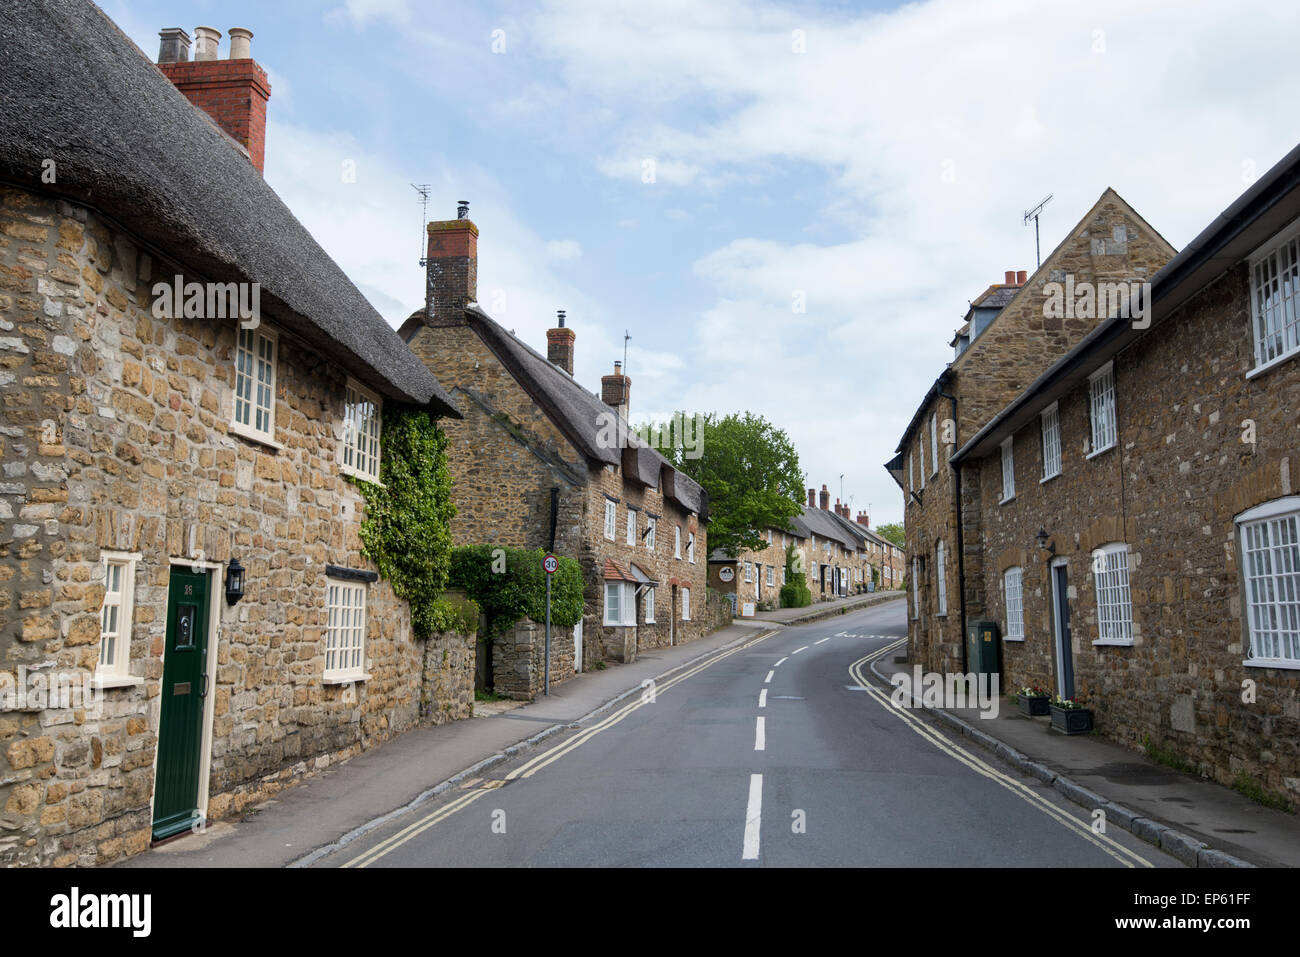 Le village pittoresque d'Abbotsbury, dans le Dorset, Angleterre, Royaume-Uni Banque D'Images